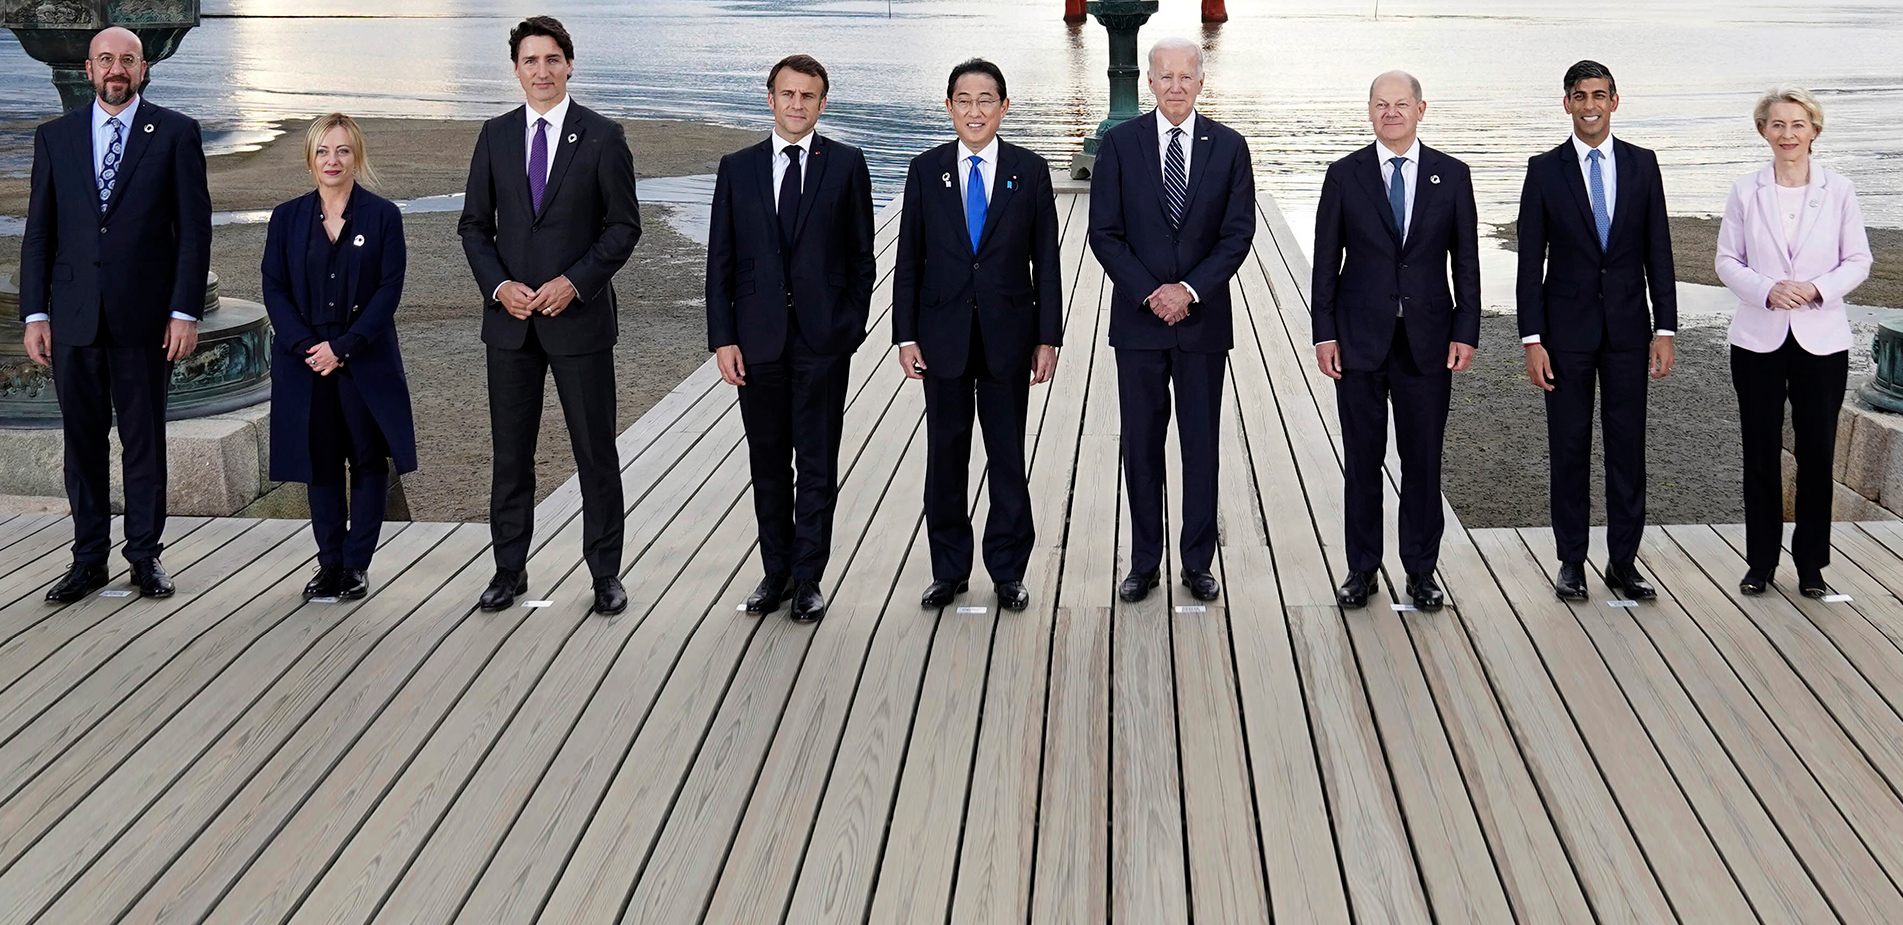 Σύνοδος G7: Η Κίνα απειλεί την ενότητα της Δύσης και κάνει «ghosting» στον Μπάιντεν